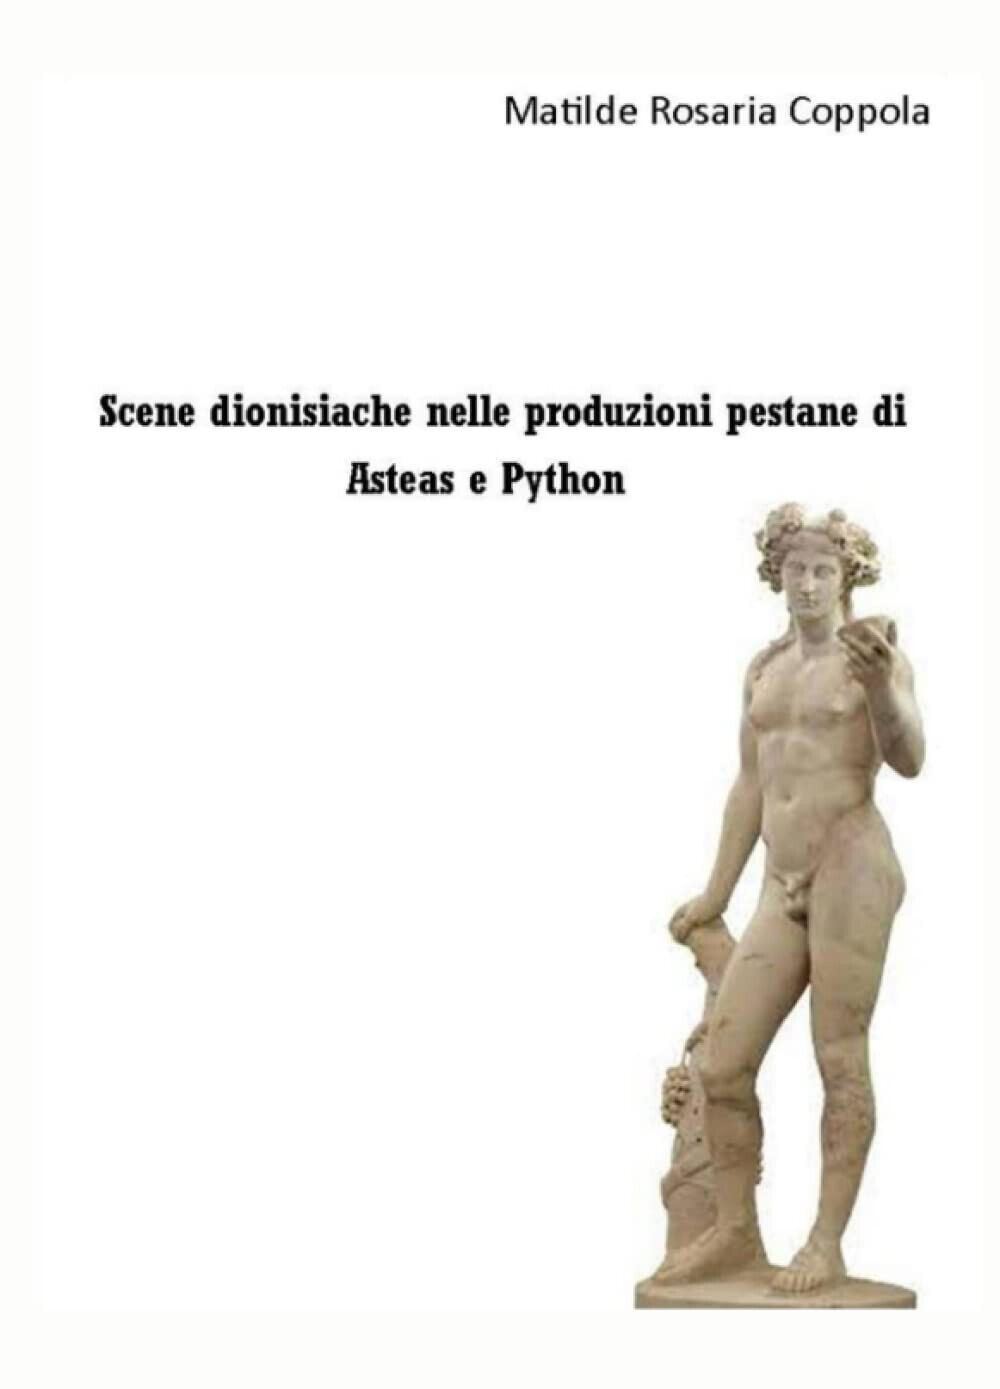 Scene dionisiache nelle produzioni pestane di Asteas e Python - ilmiolibro, 2021 libro usato